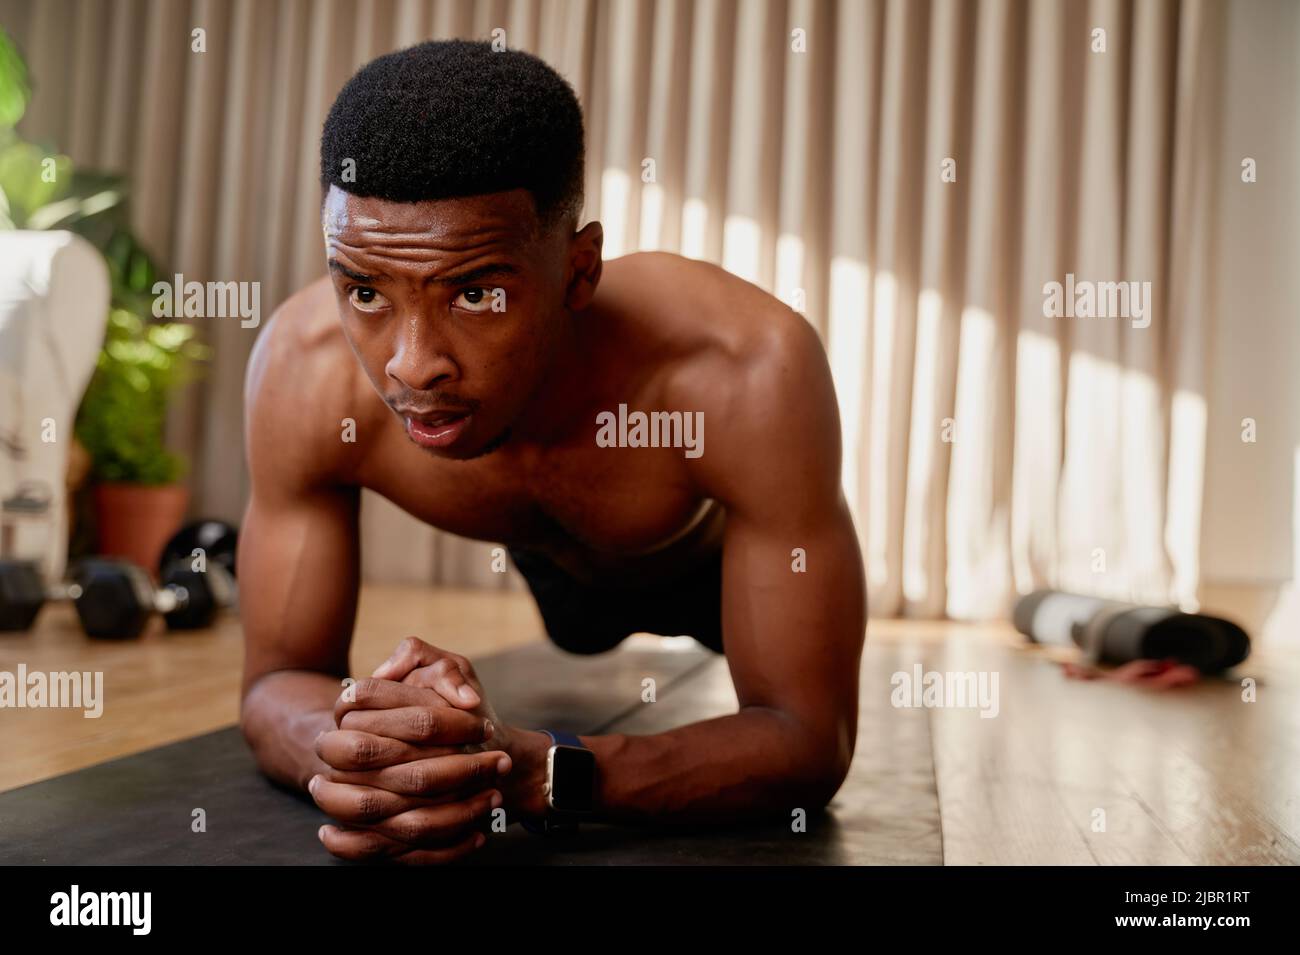 Junger afroamerikanischer schwarzer Mann, der zu Hause trainiert, hält eine Plankenposition und trainiert von zu Hause aus auf seiner Trainingsmatte Stockfoto